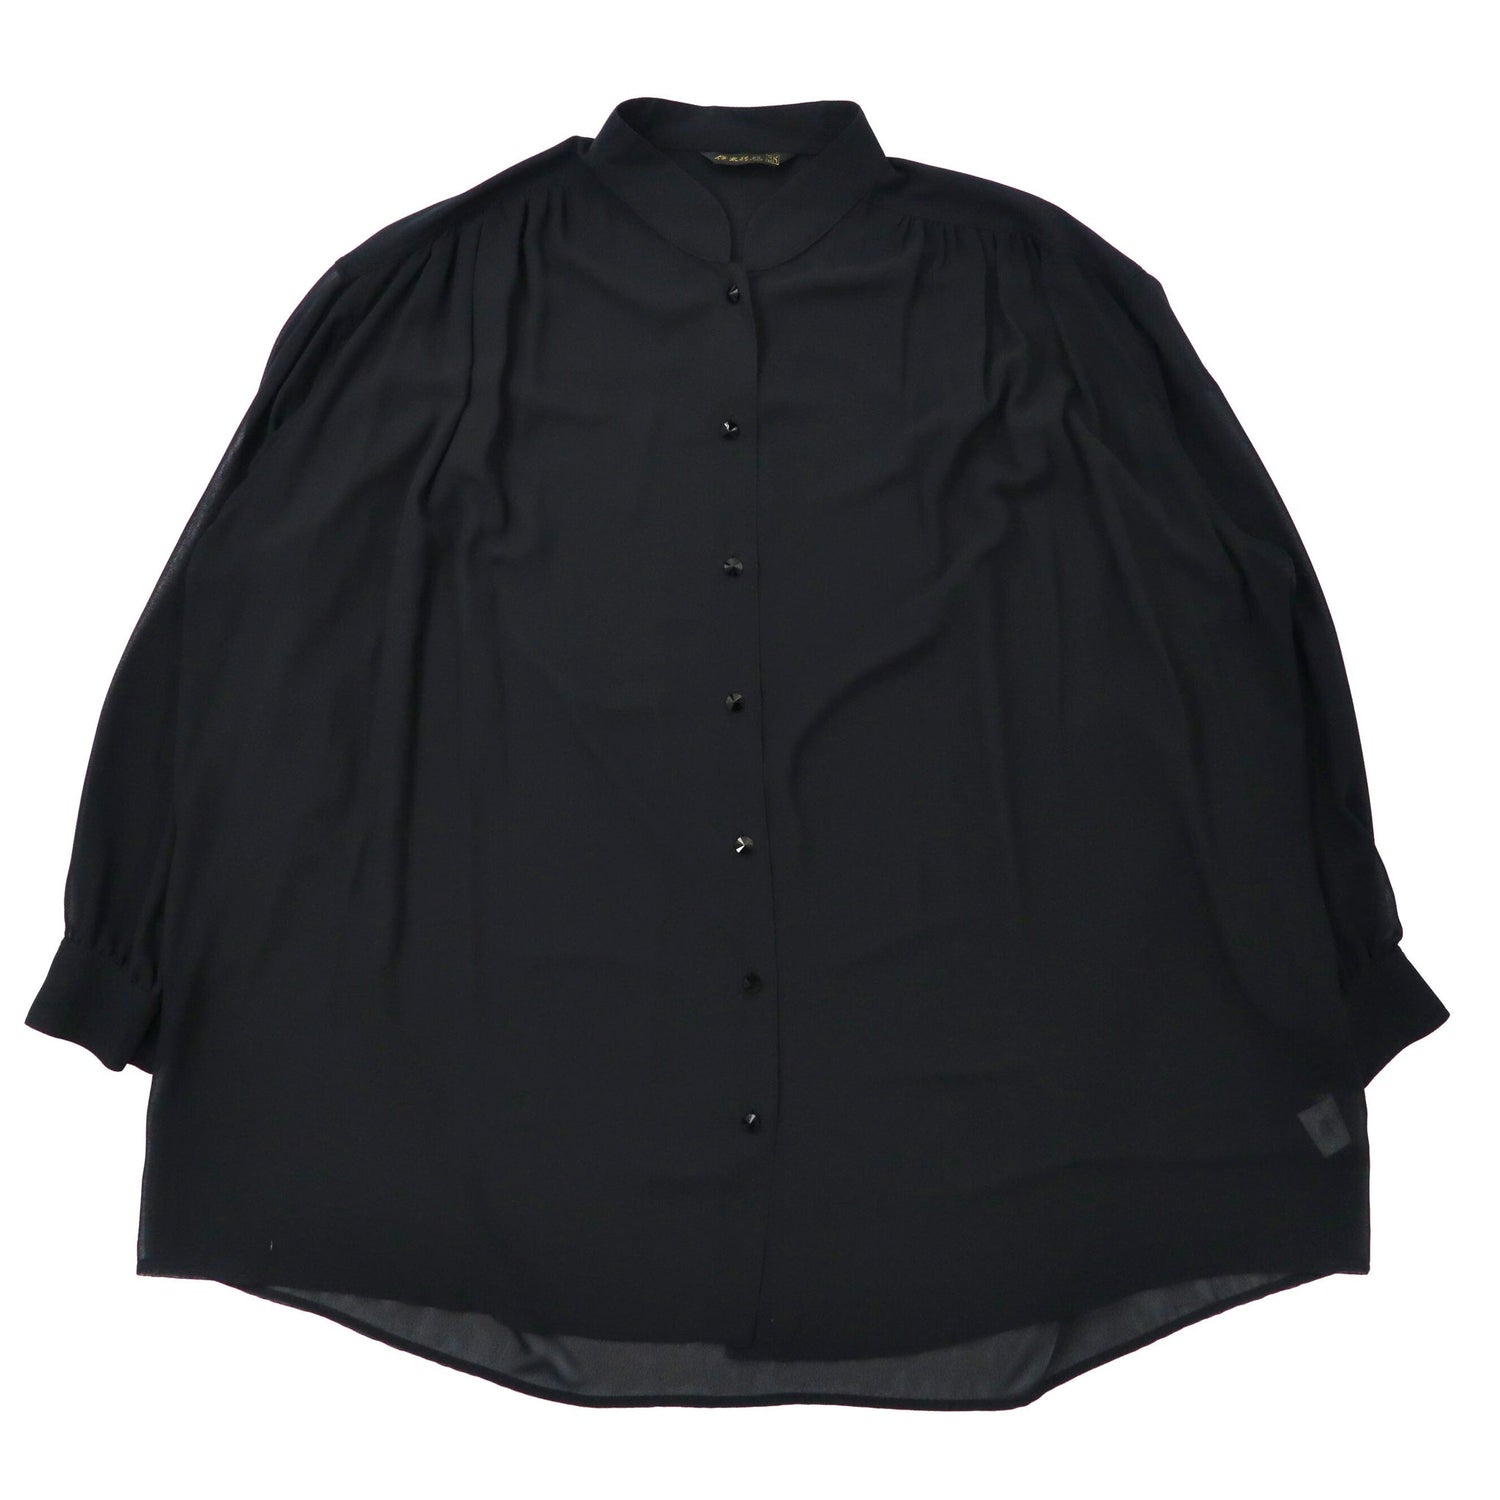 伊太利屋 シースルー オーバーシャツ 11 ブラック ポリエステル La Moda GOJI 日本製-伊太利屋-古着